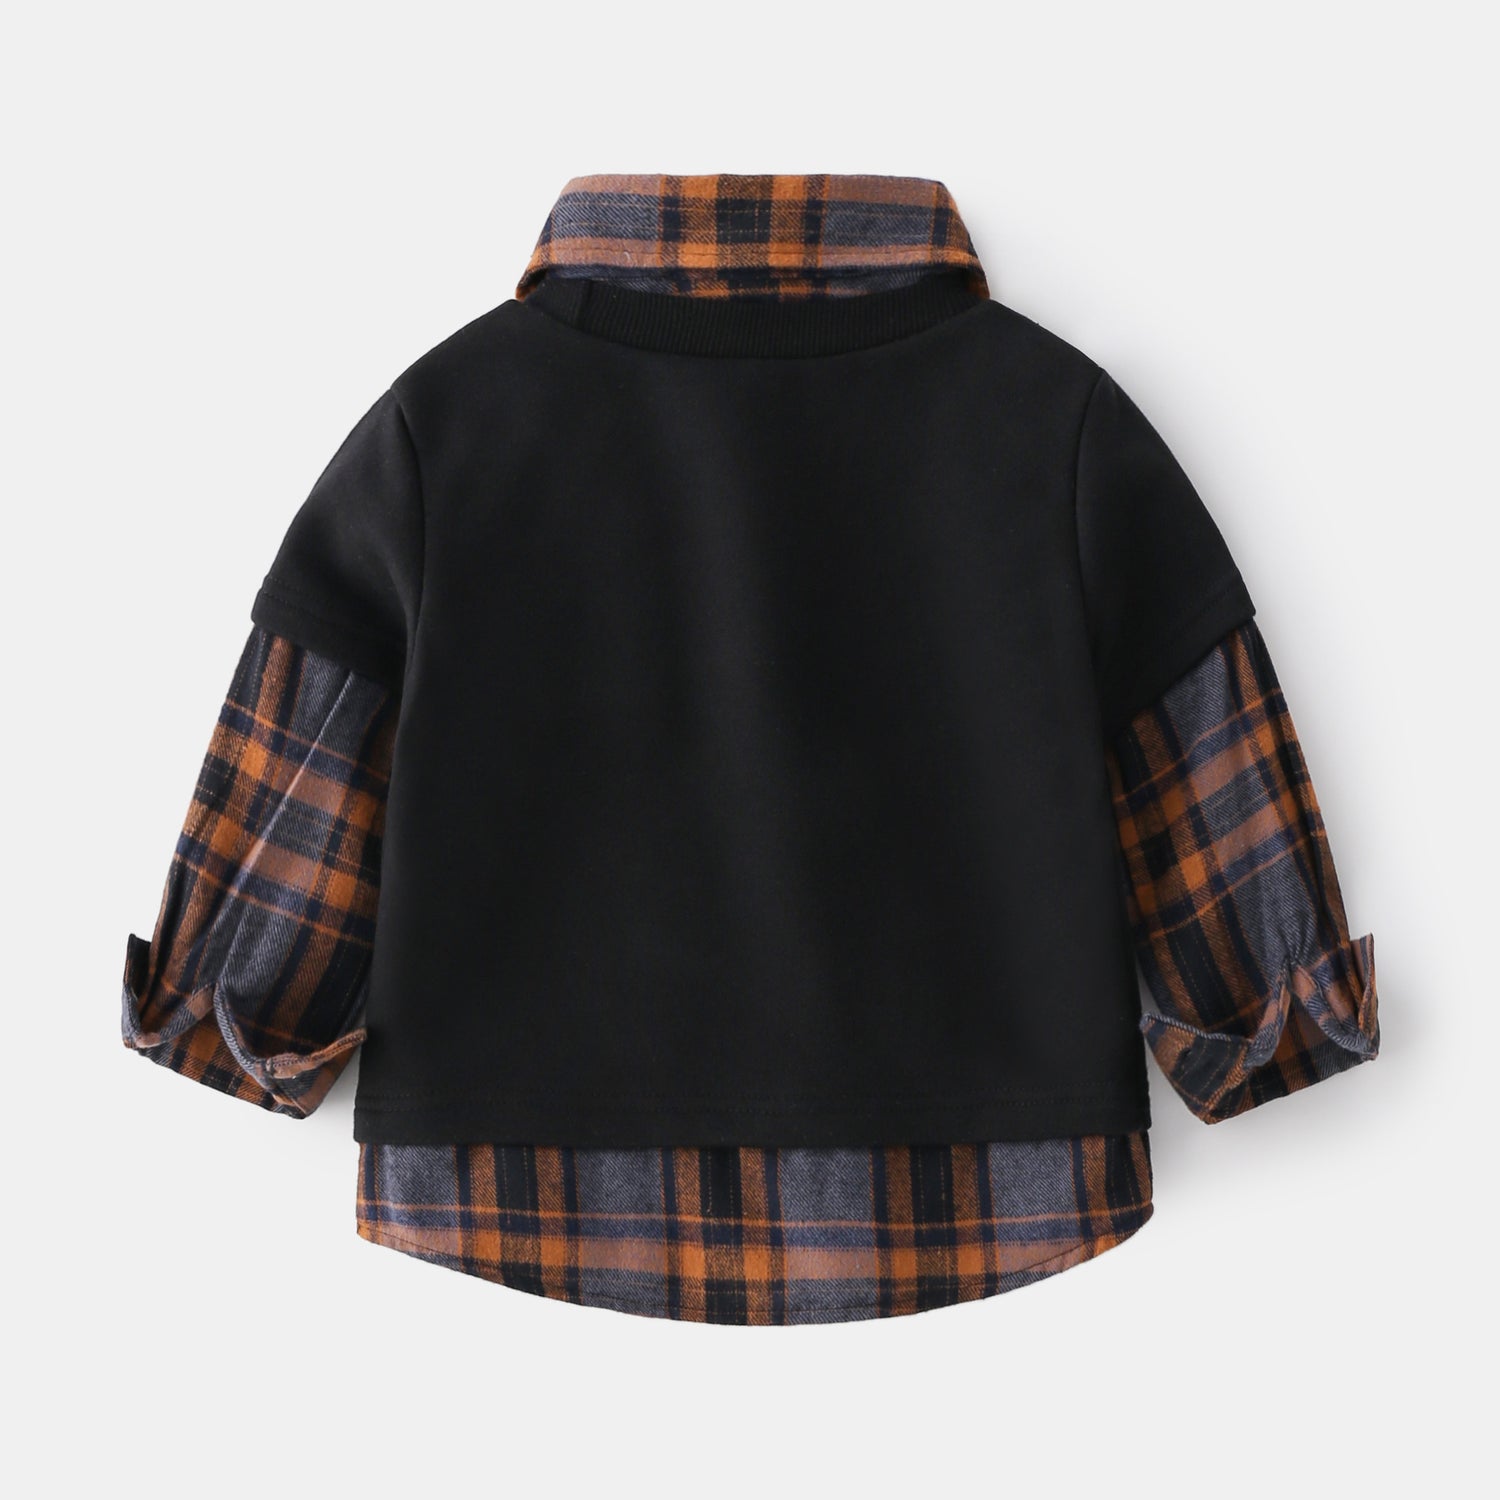 [513581] - Atasan Sweater Model Kemeja Flanel Lengan Panjang Anak Laki-laki - Motif Holiday